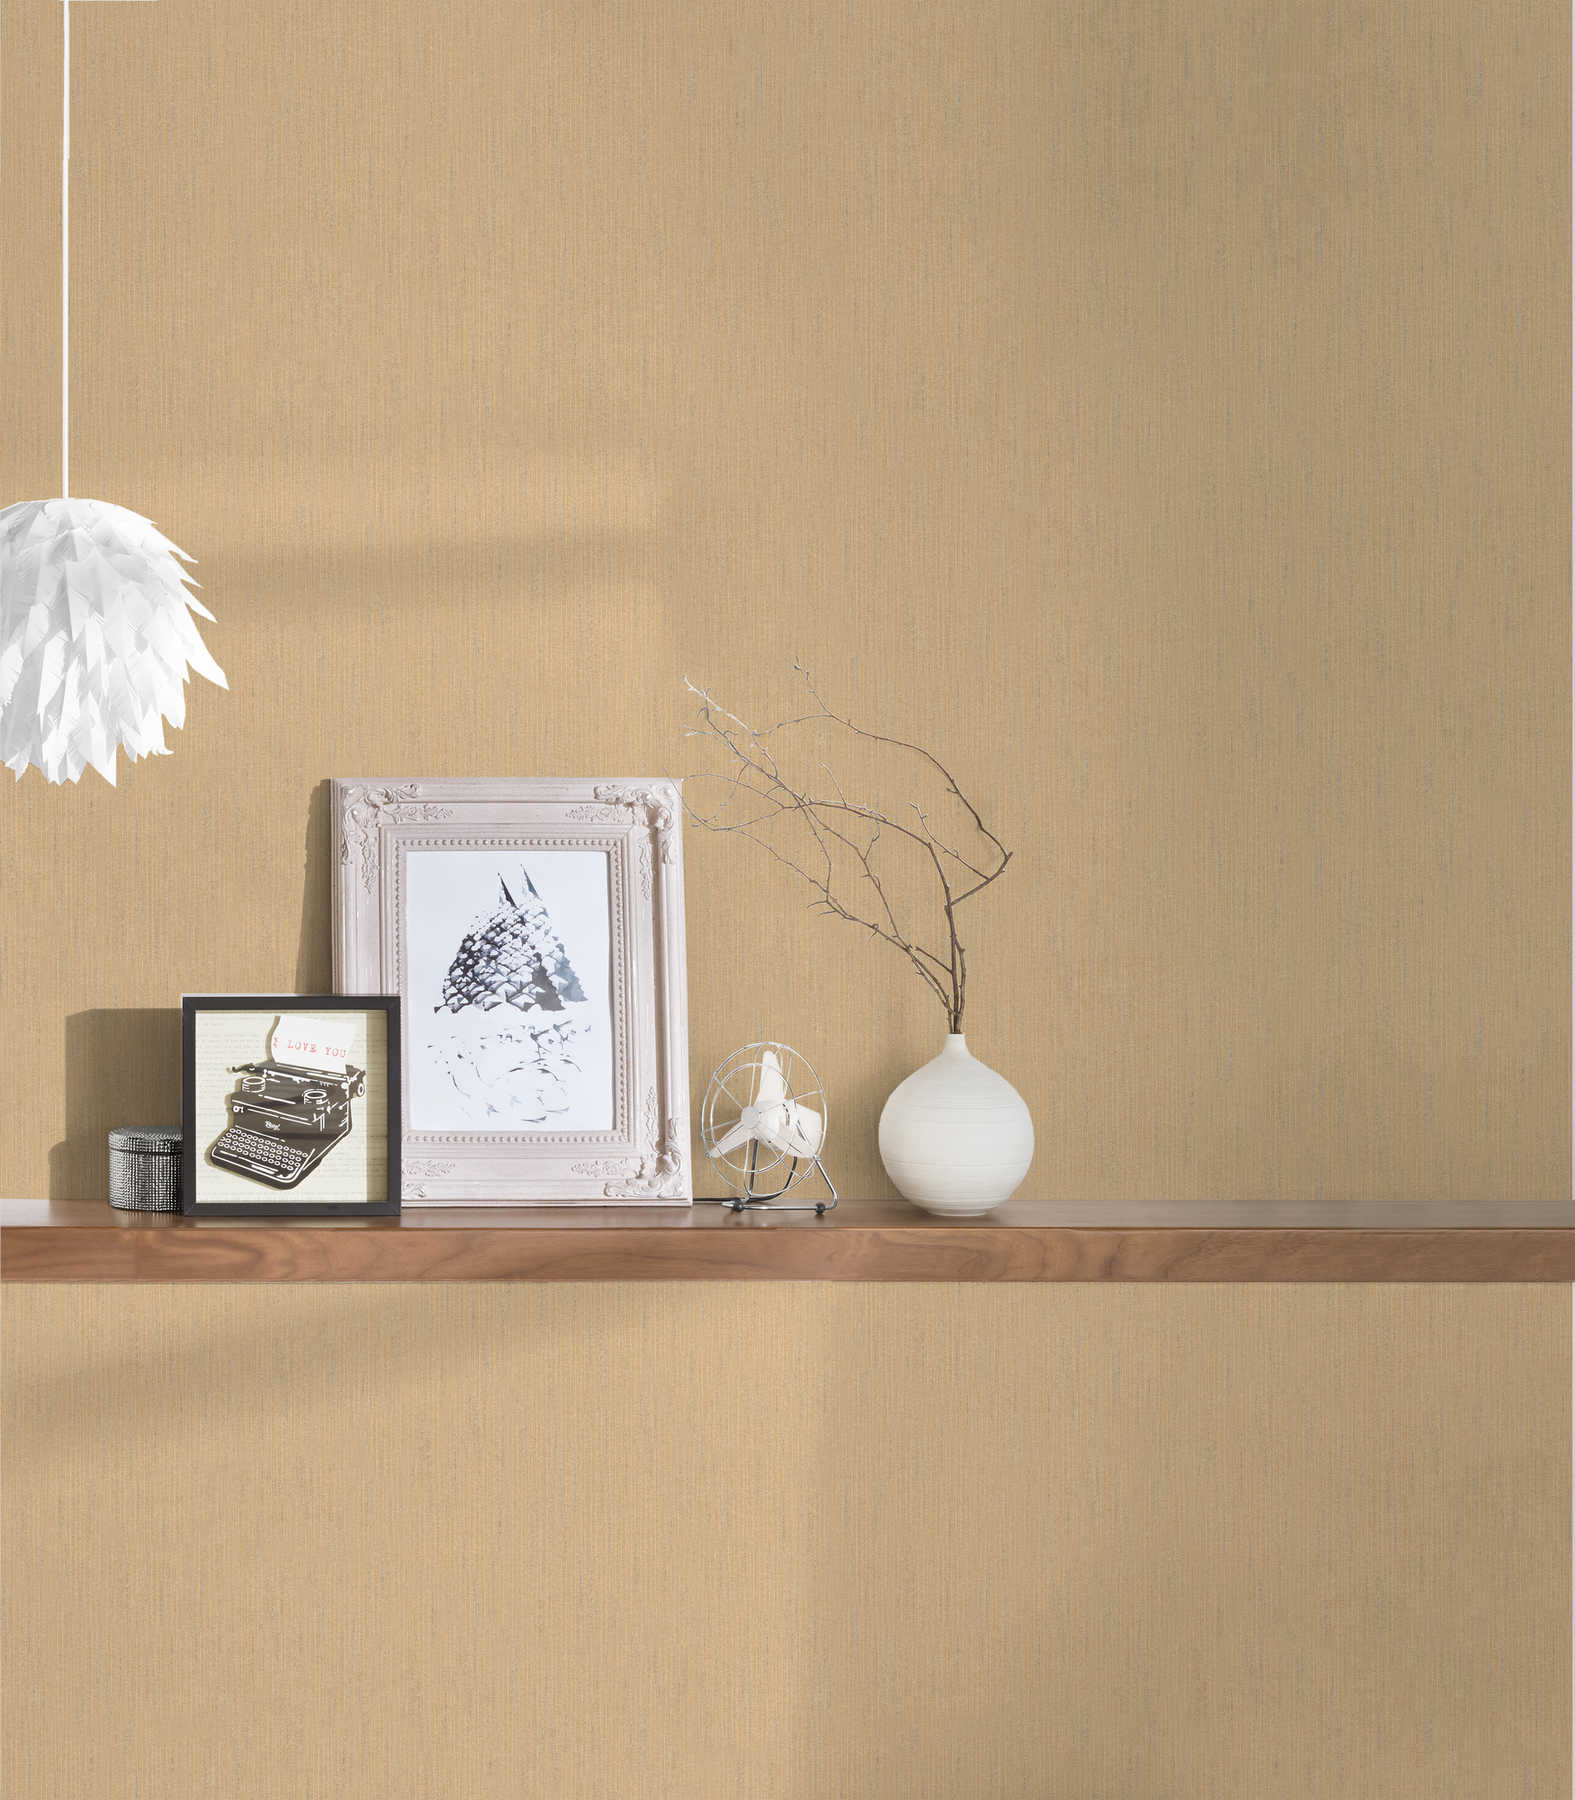             Papel pintado de color beige moteado con estructura textil
        